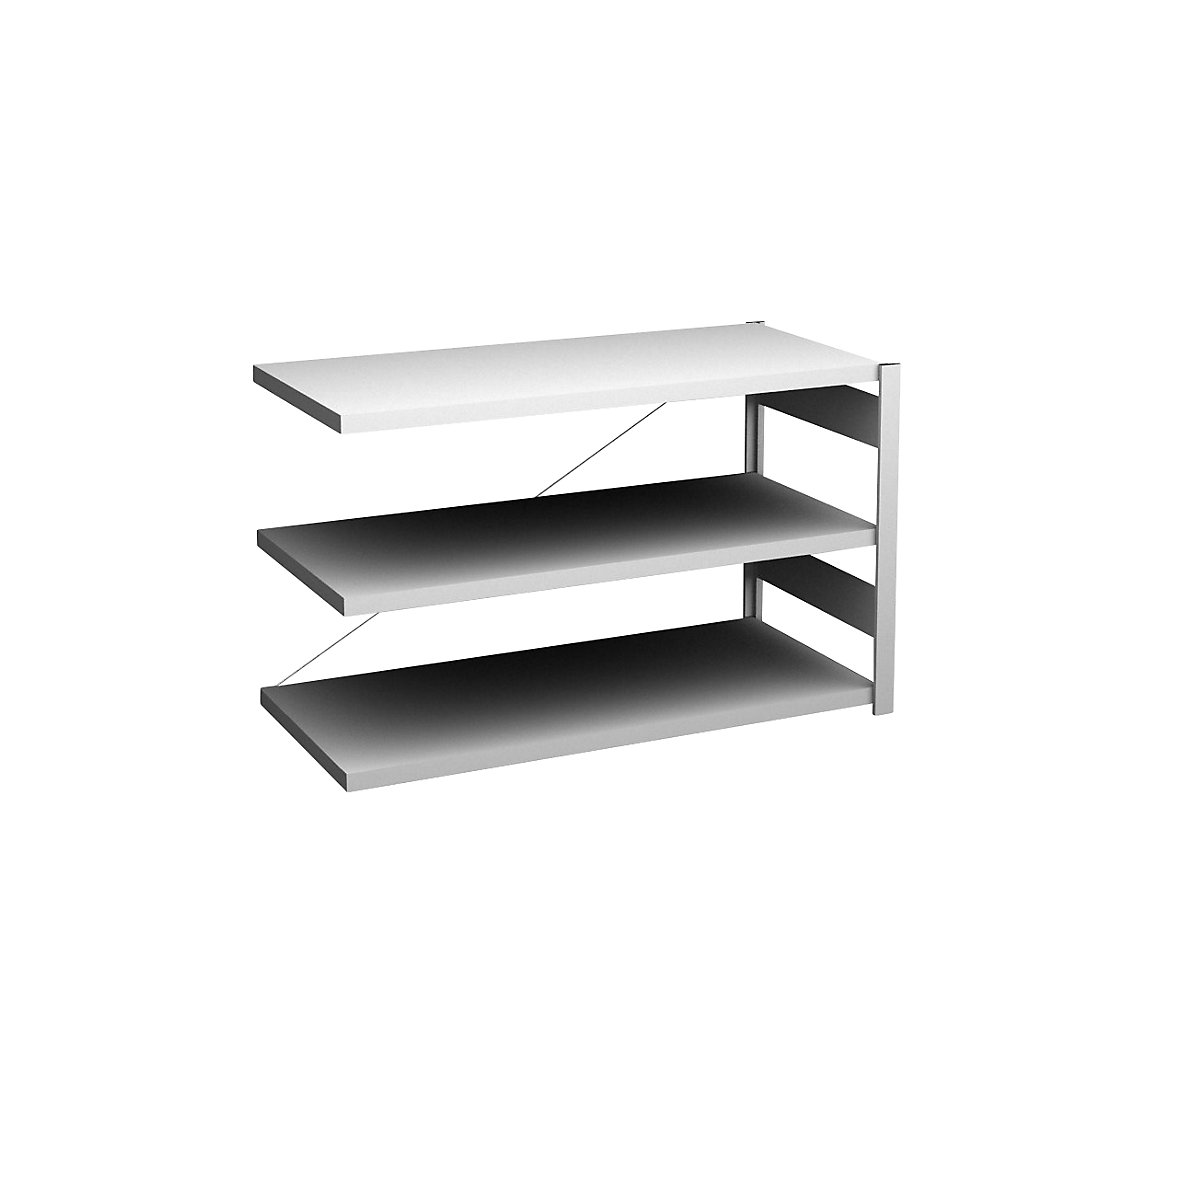 Sideboard shelving unit, light grey – hofe, height 825 mm, 3 shelves, extension shelf unit, shelf depth 600 mm, max. shelf load 190 kg-2